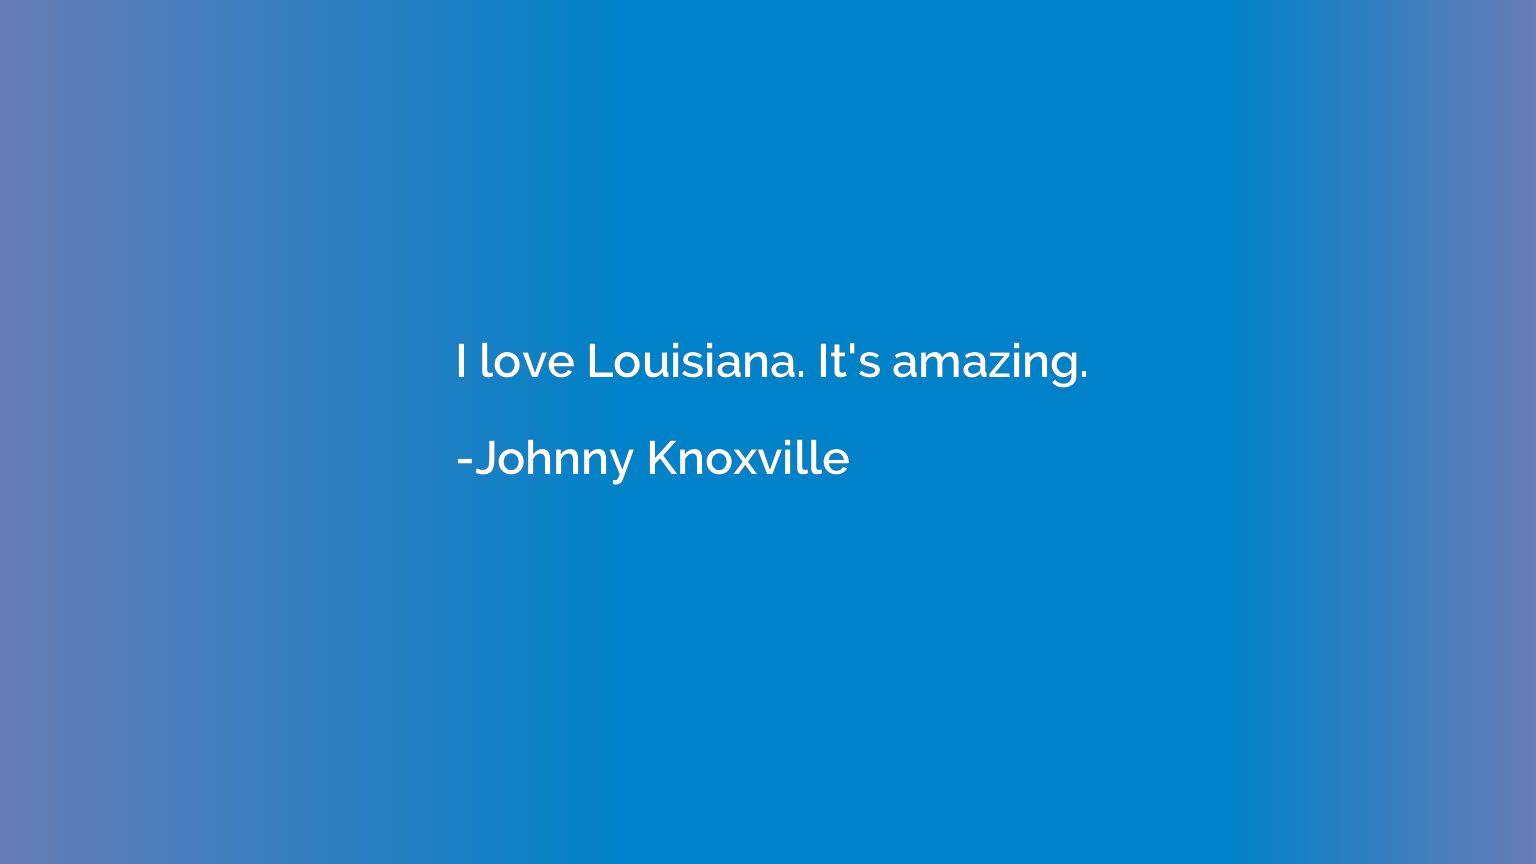 I love Louisiana. It's amazing.